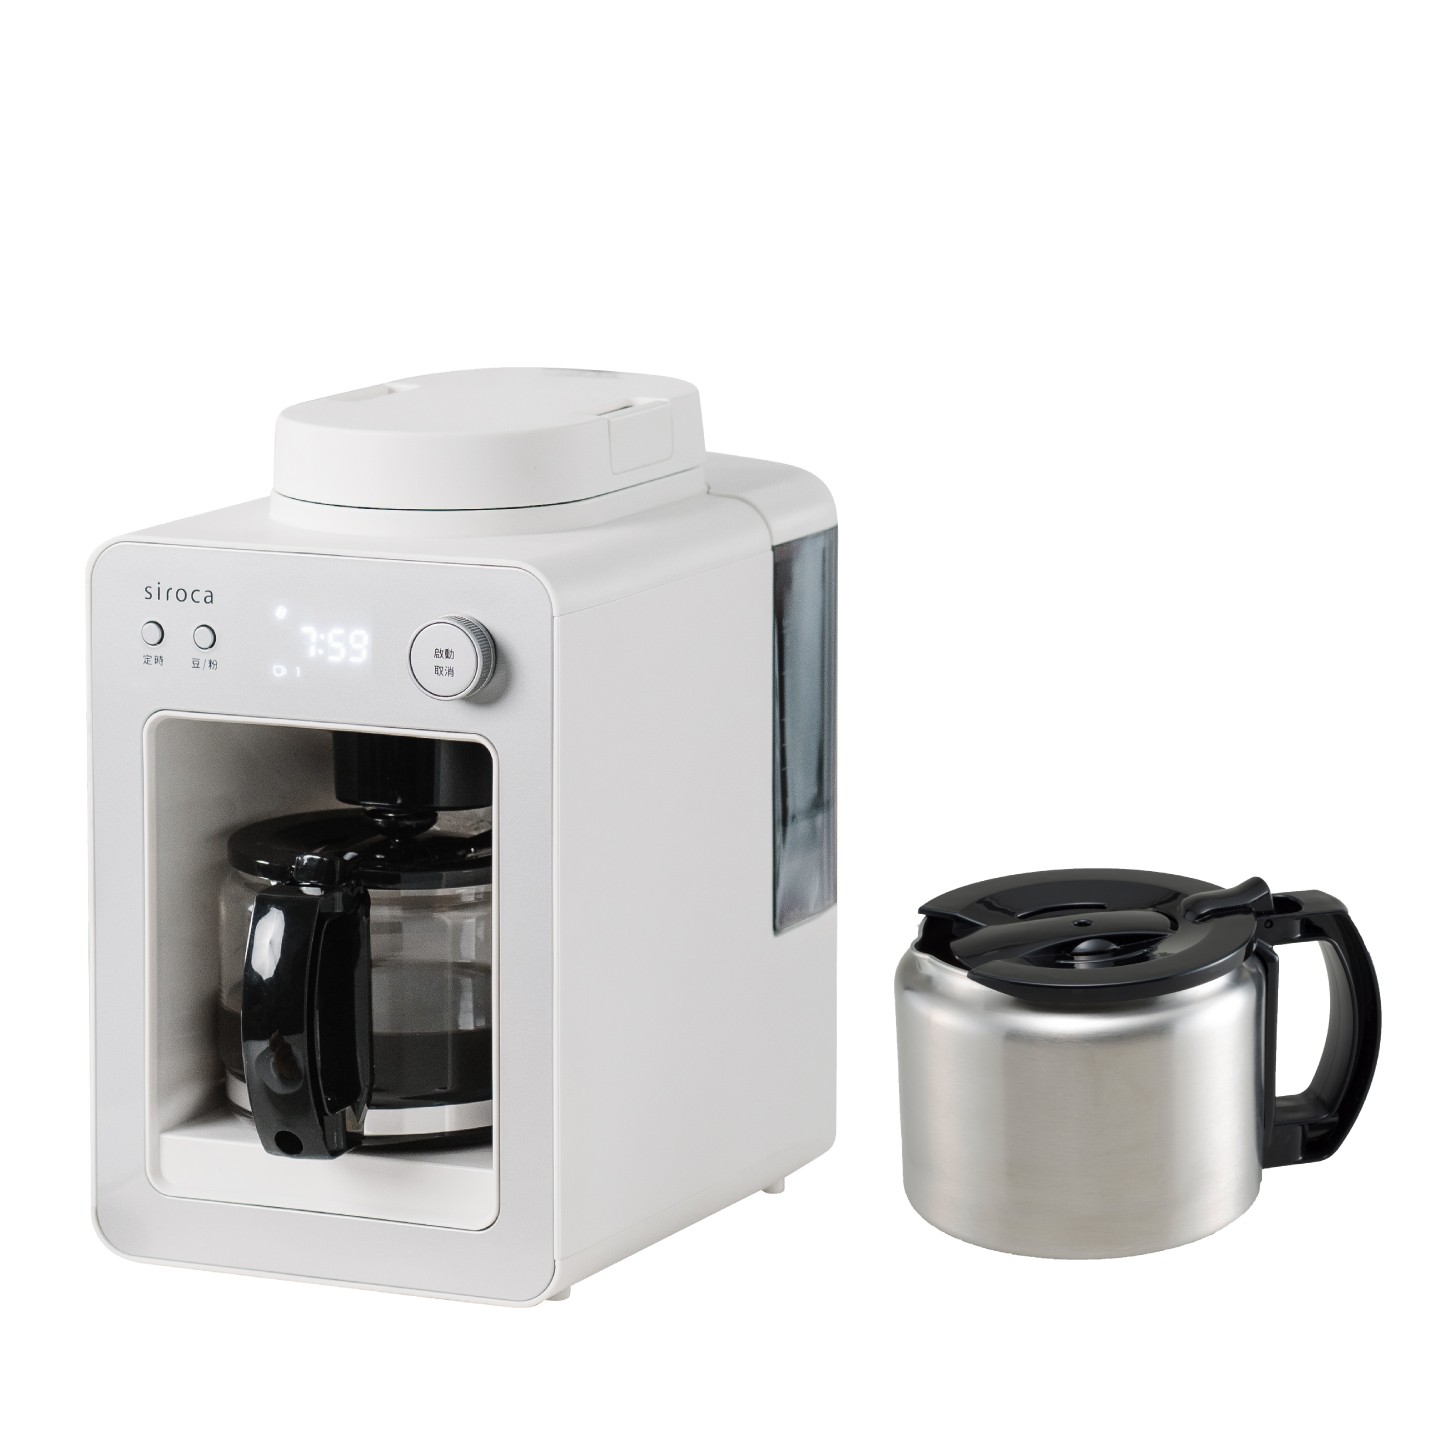 【贈不鏽鋼咖啡壺】SC-A3510 自動研磨咖啡機 晨光白